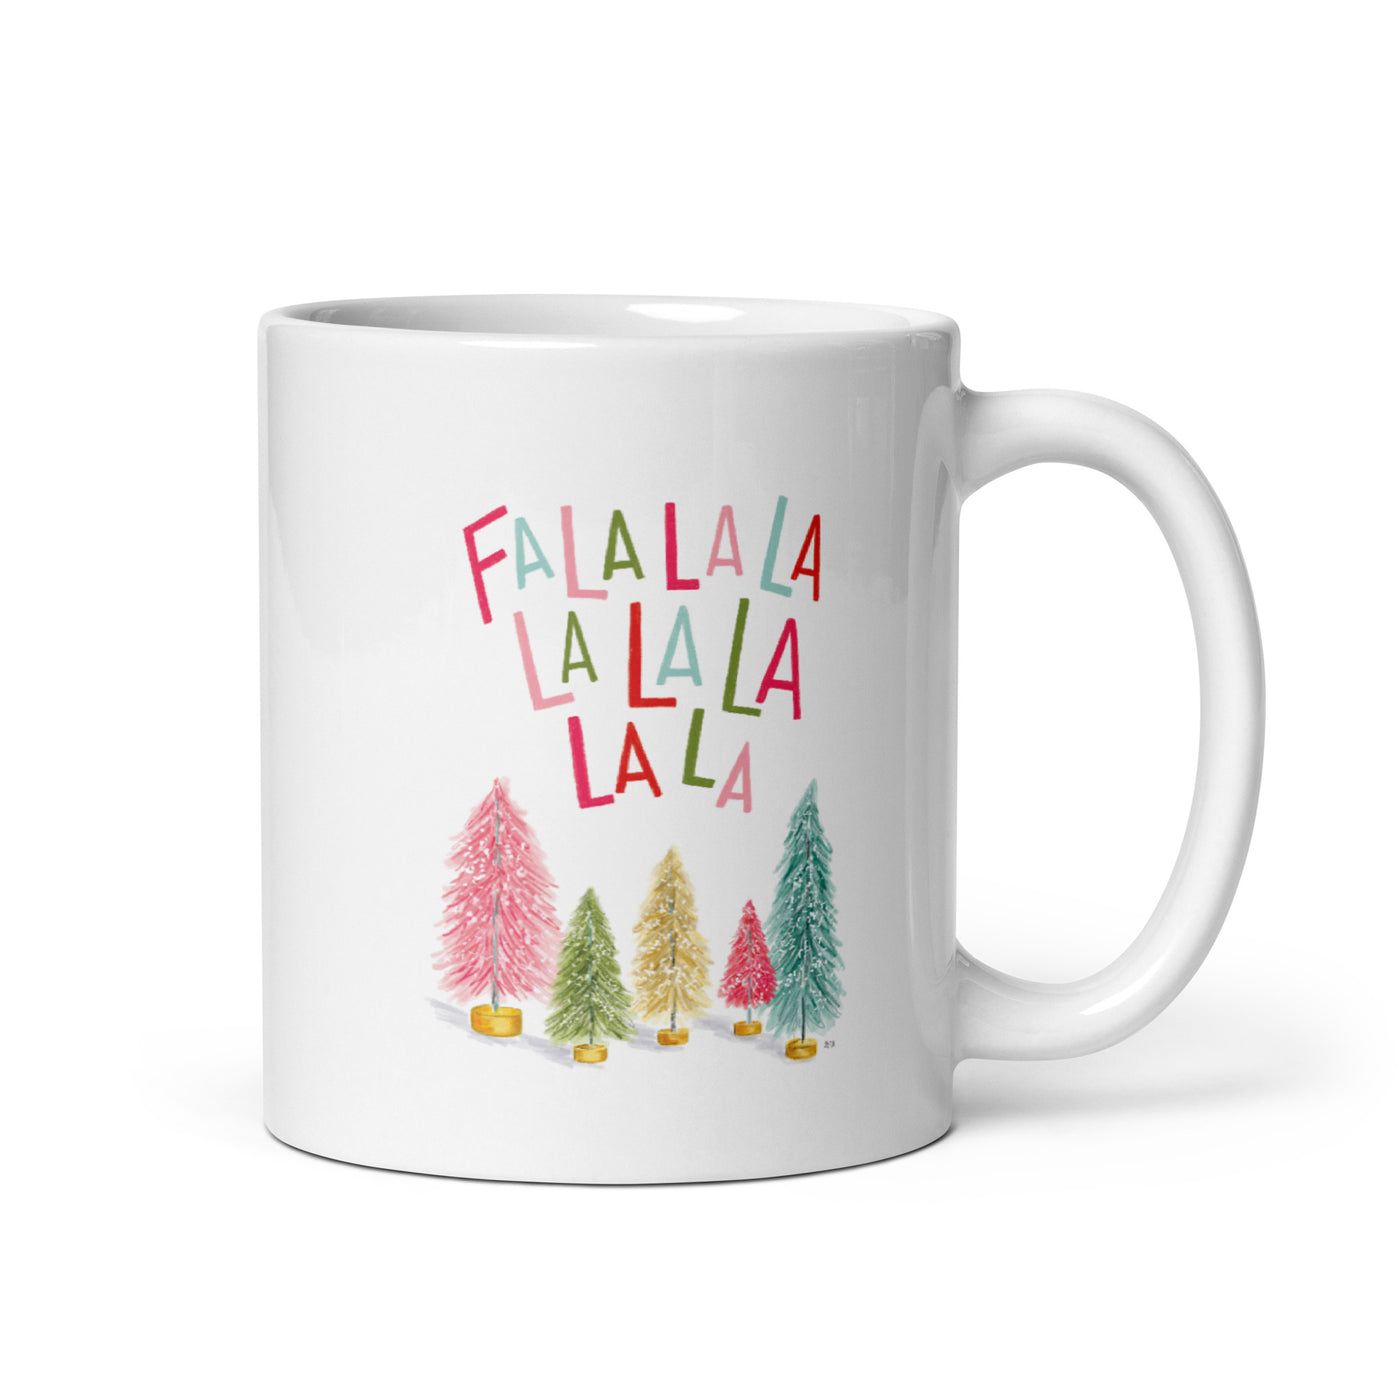 Falalalala - Ceramic 11oz Mug